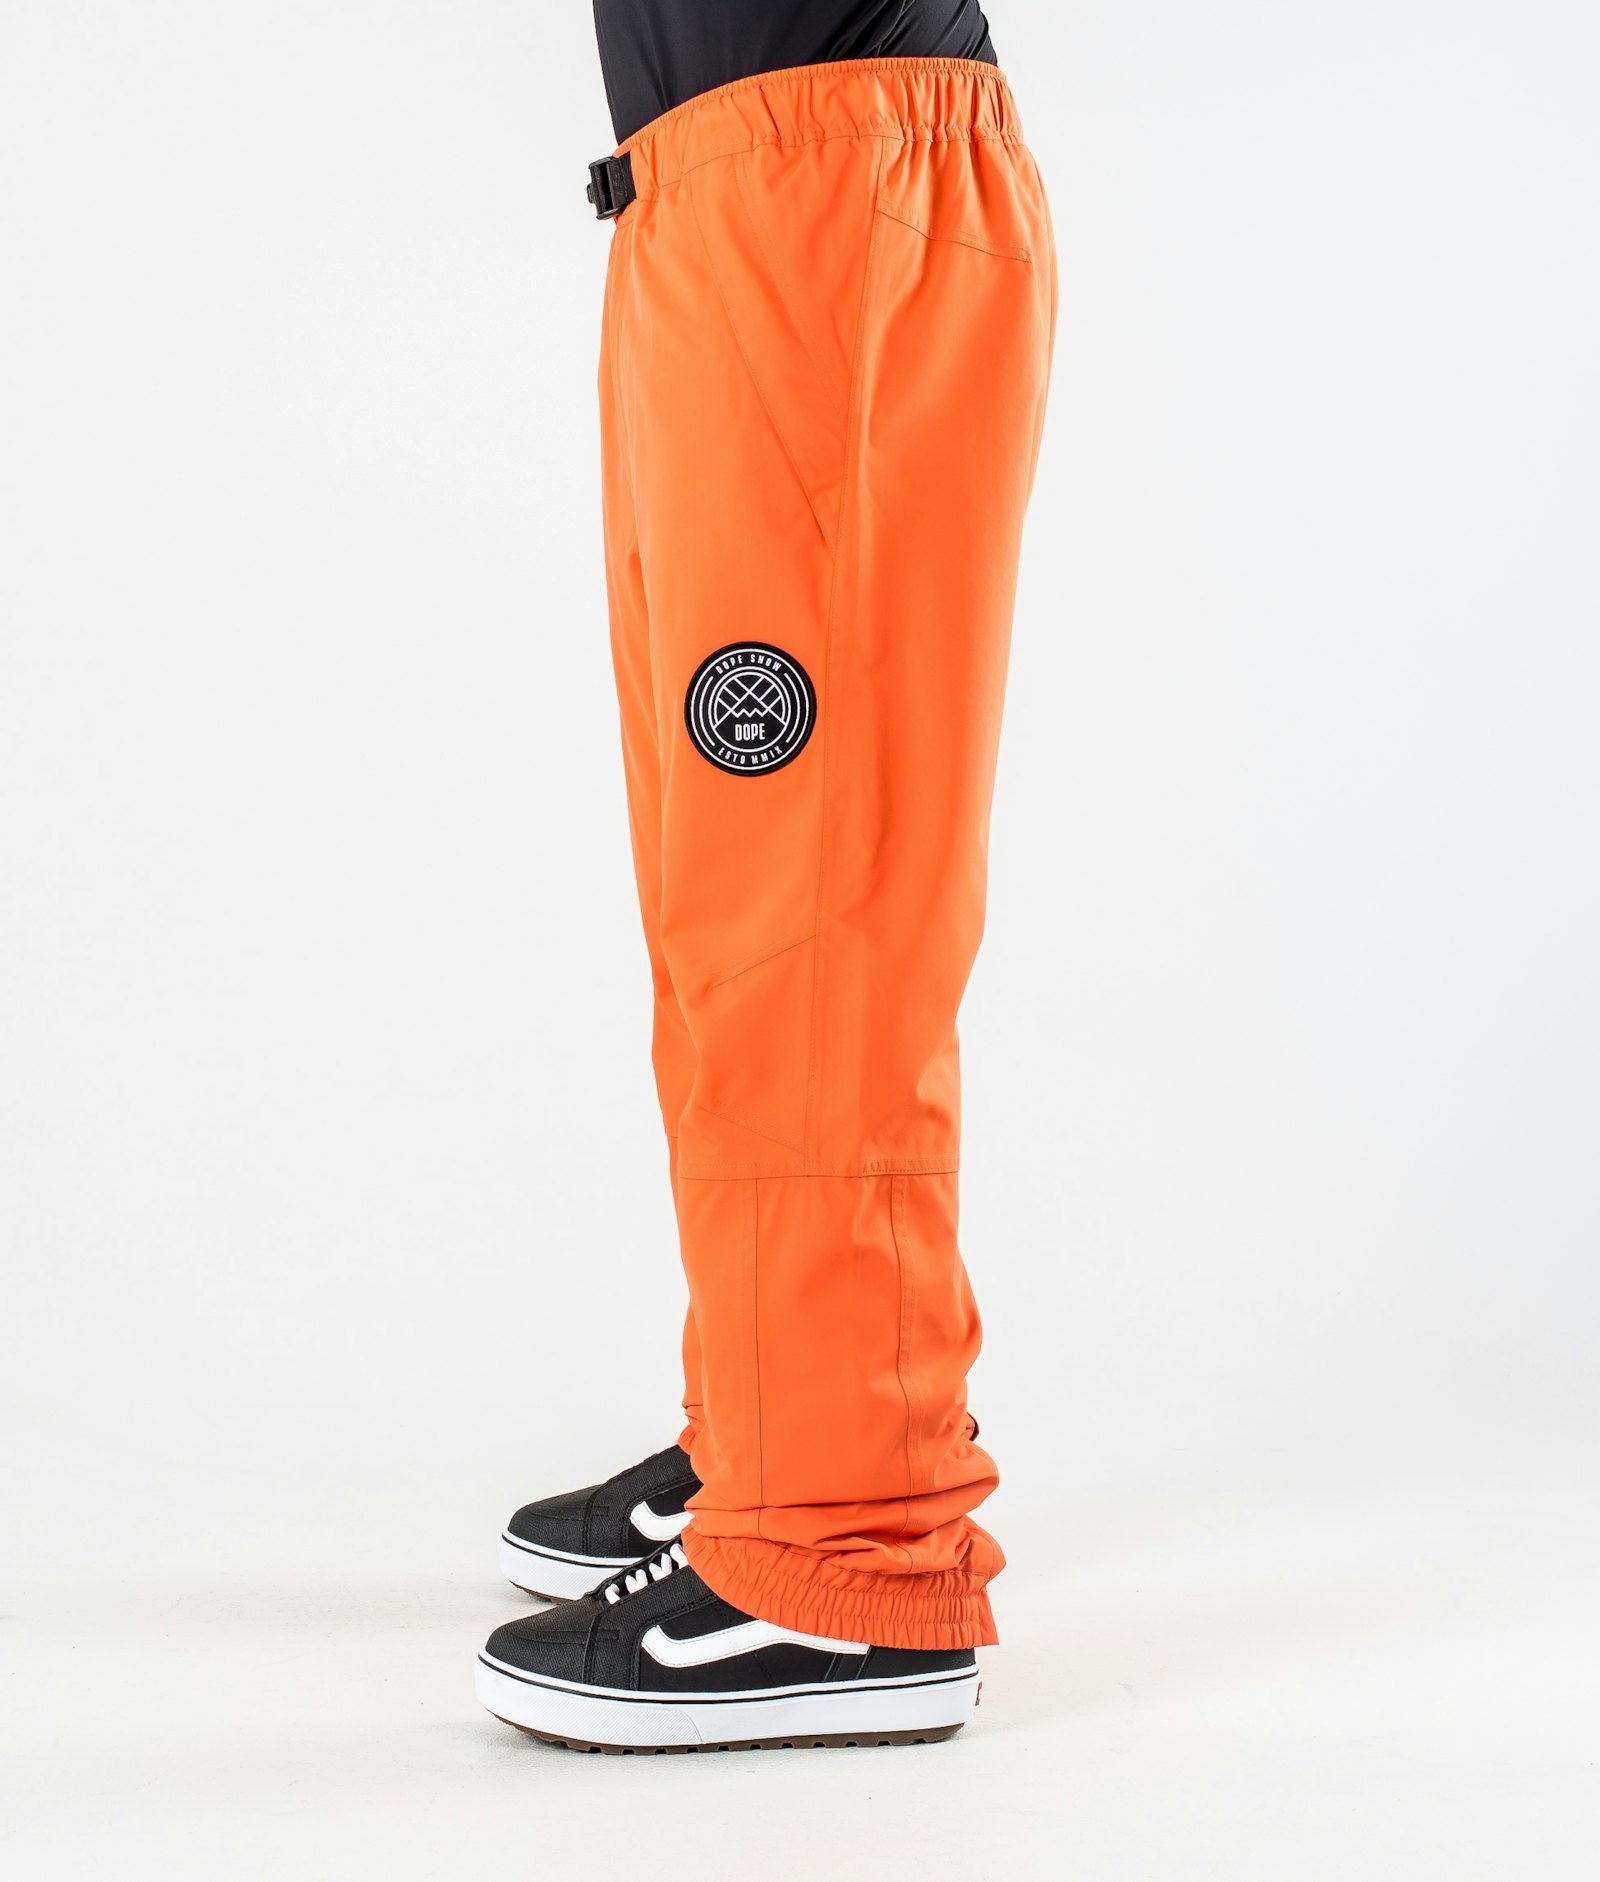 Dope Blizzard 2020 Pantalon de Snowboard Homme Orange